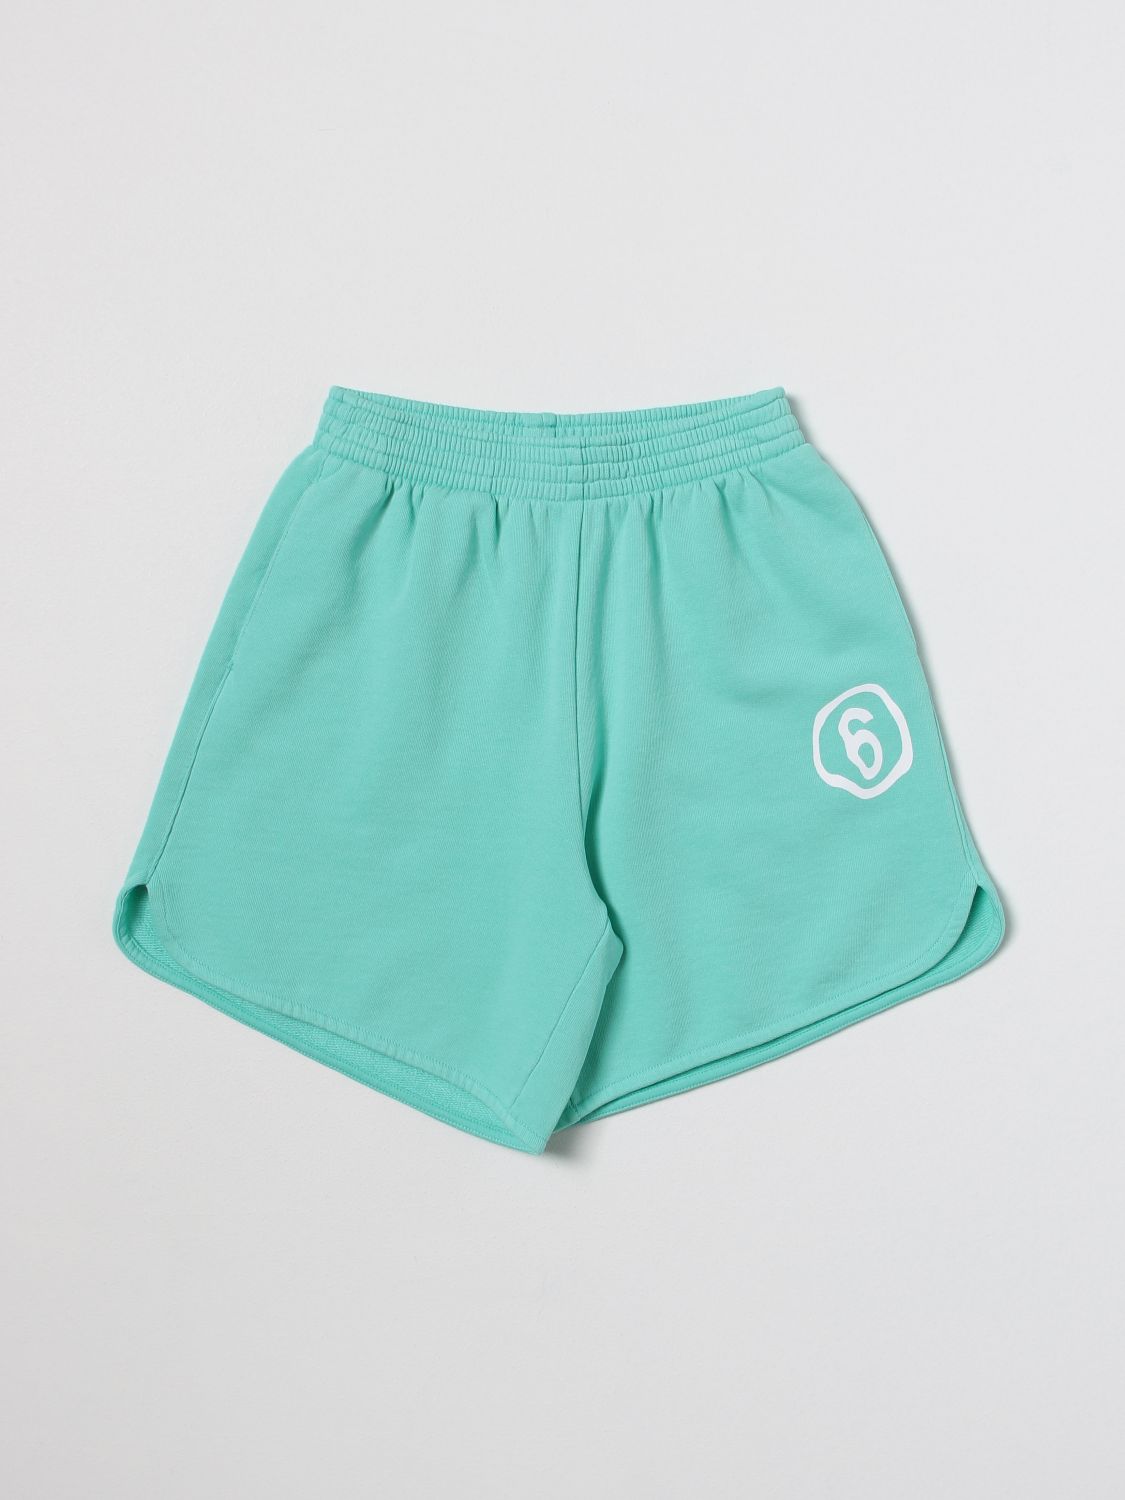 Mm6 Maison Margiela Kids' Mm6p71u Shorts Maison Margiela Aquamarine Fleece Shorts With Rounded Edges And Logo In Green